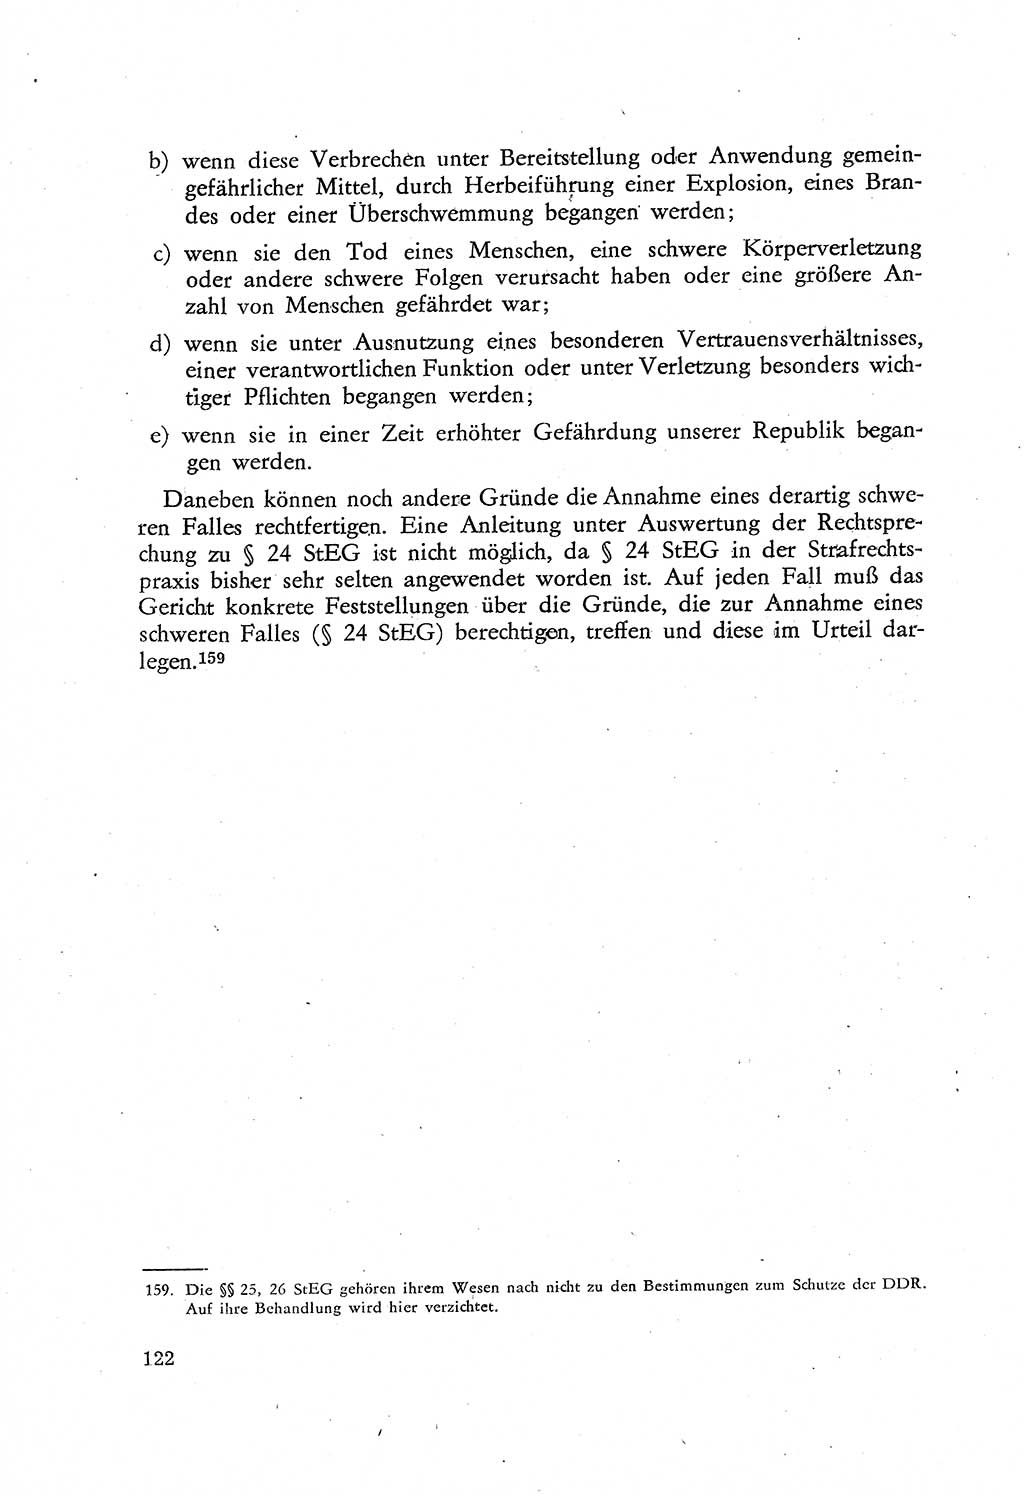 Beiträge zum Strafrecht [Deutsche Demokratische Republik (DDR)], Staatsverbrechen 1959, Seite 122 (Beitr. Strafr. DDR St.-Verbr. 1959, S. 122)